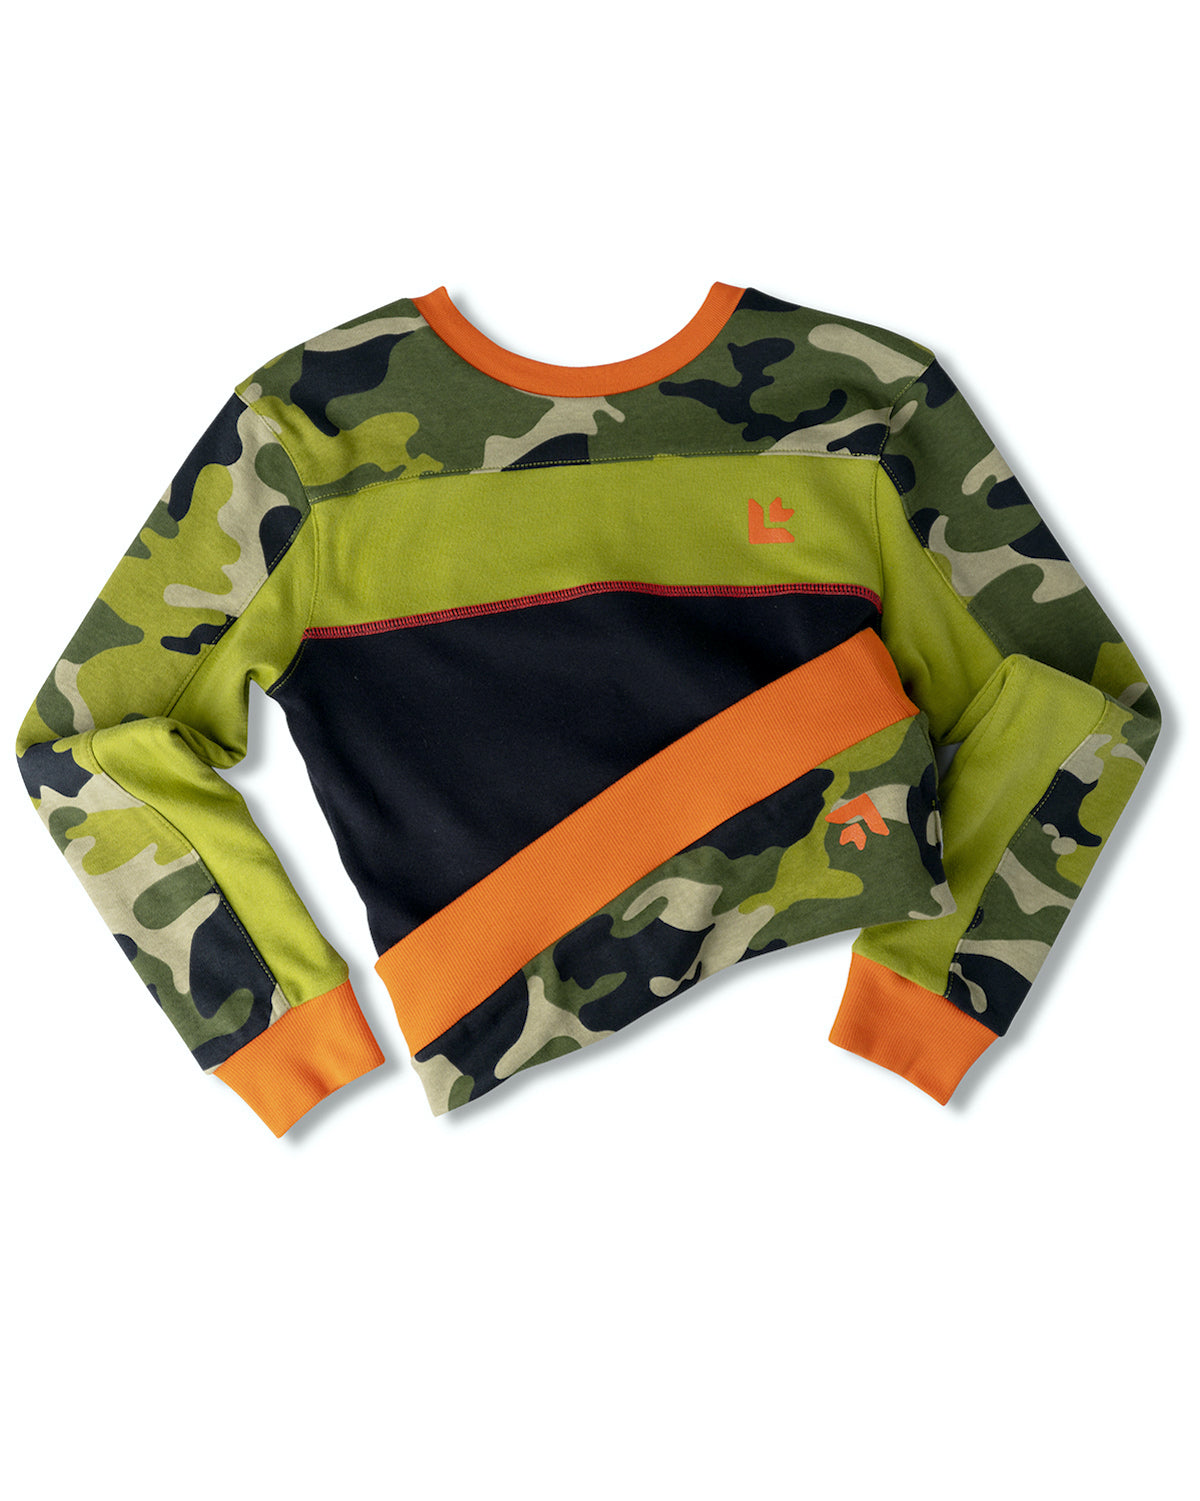 Kids Tracker All Ways Wear™ Reversible Sweatshirt